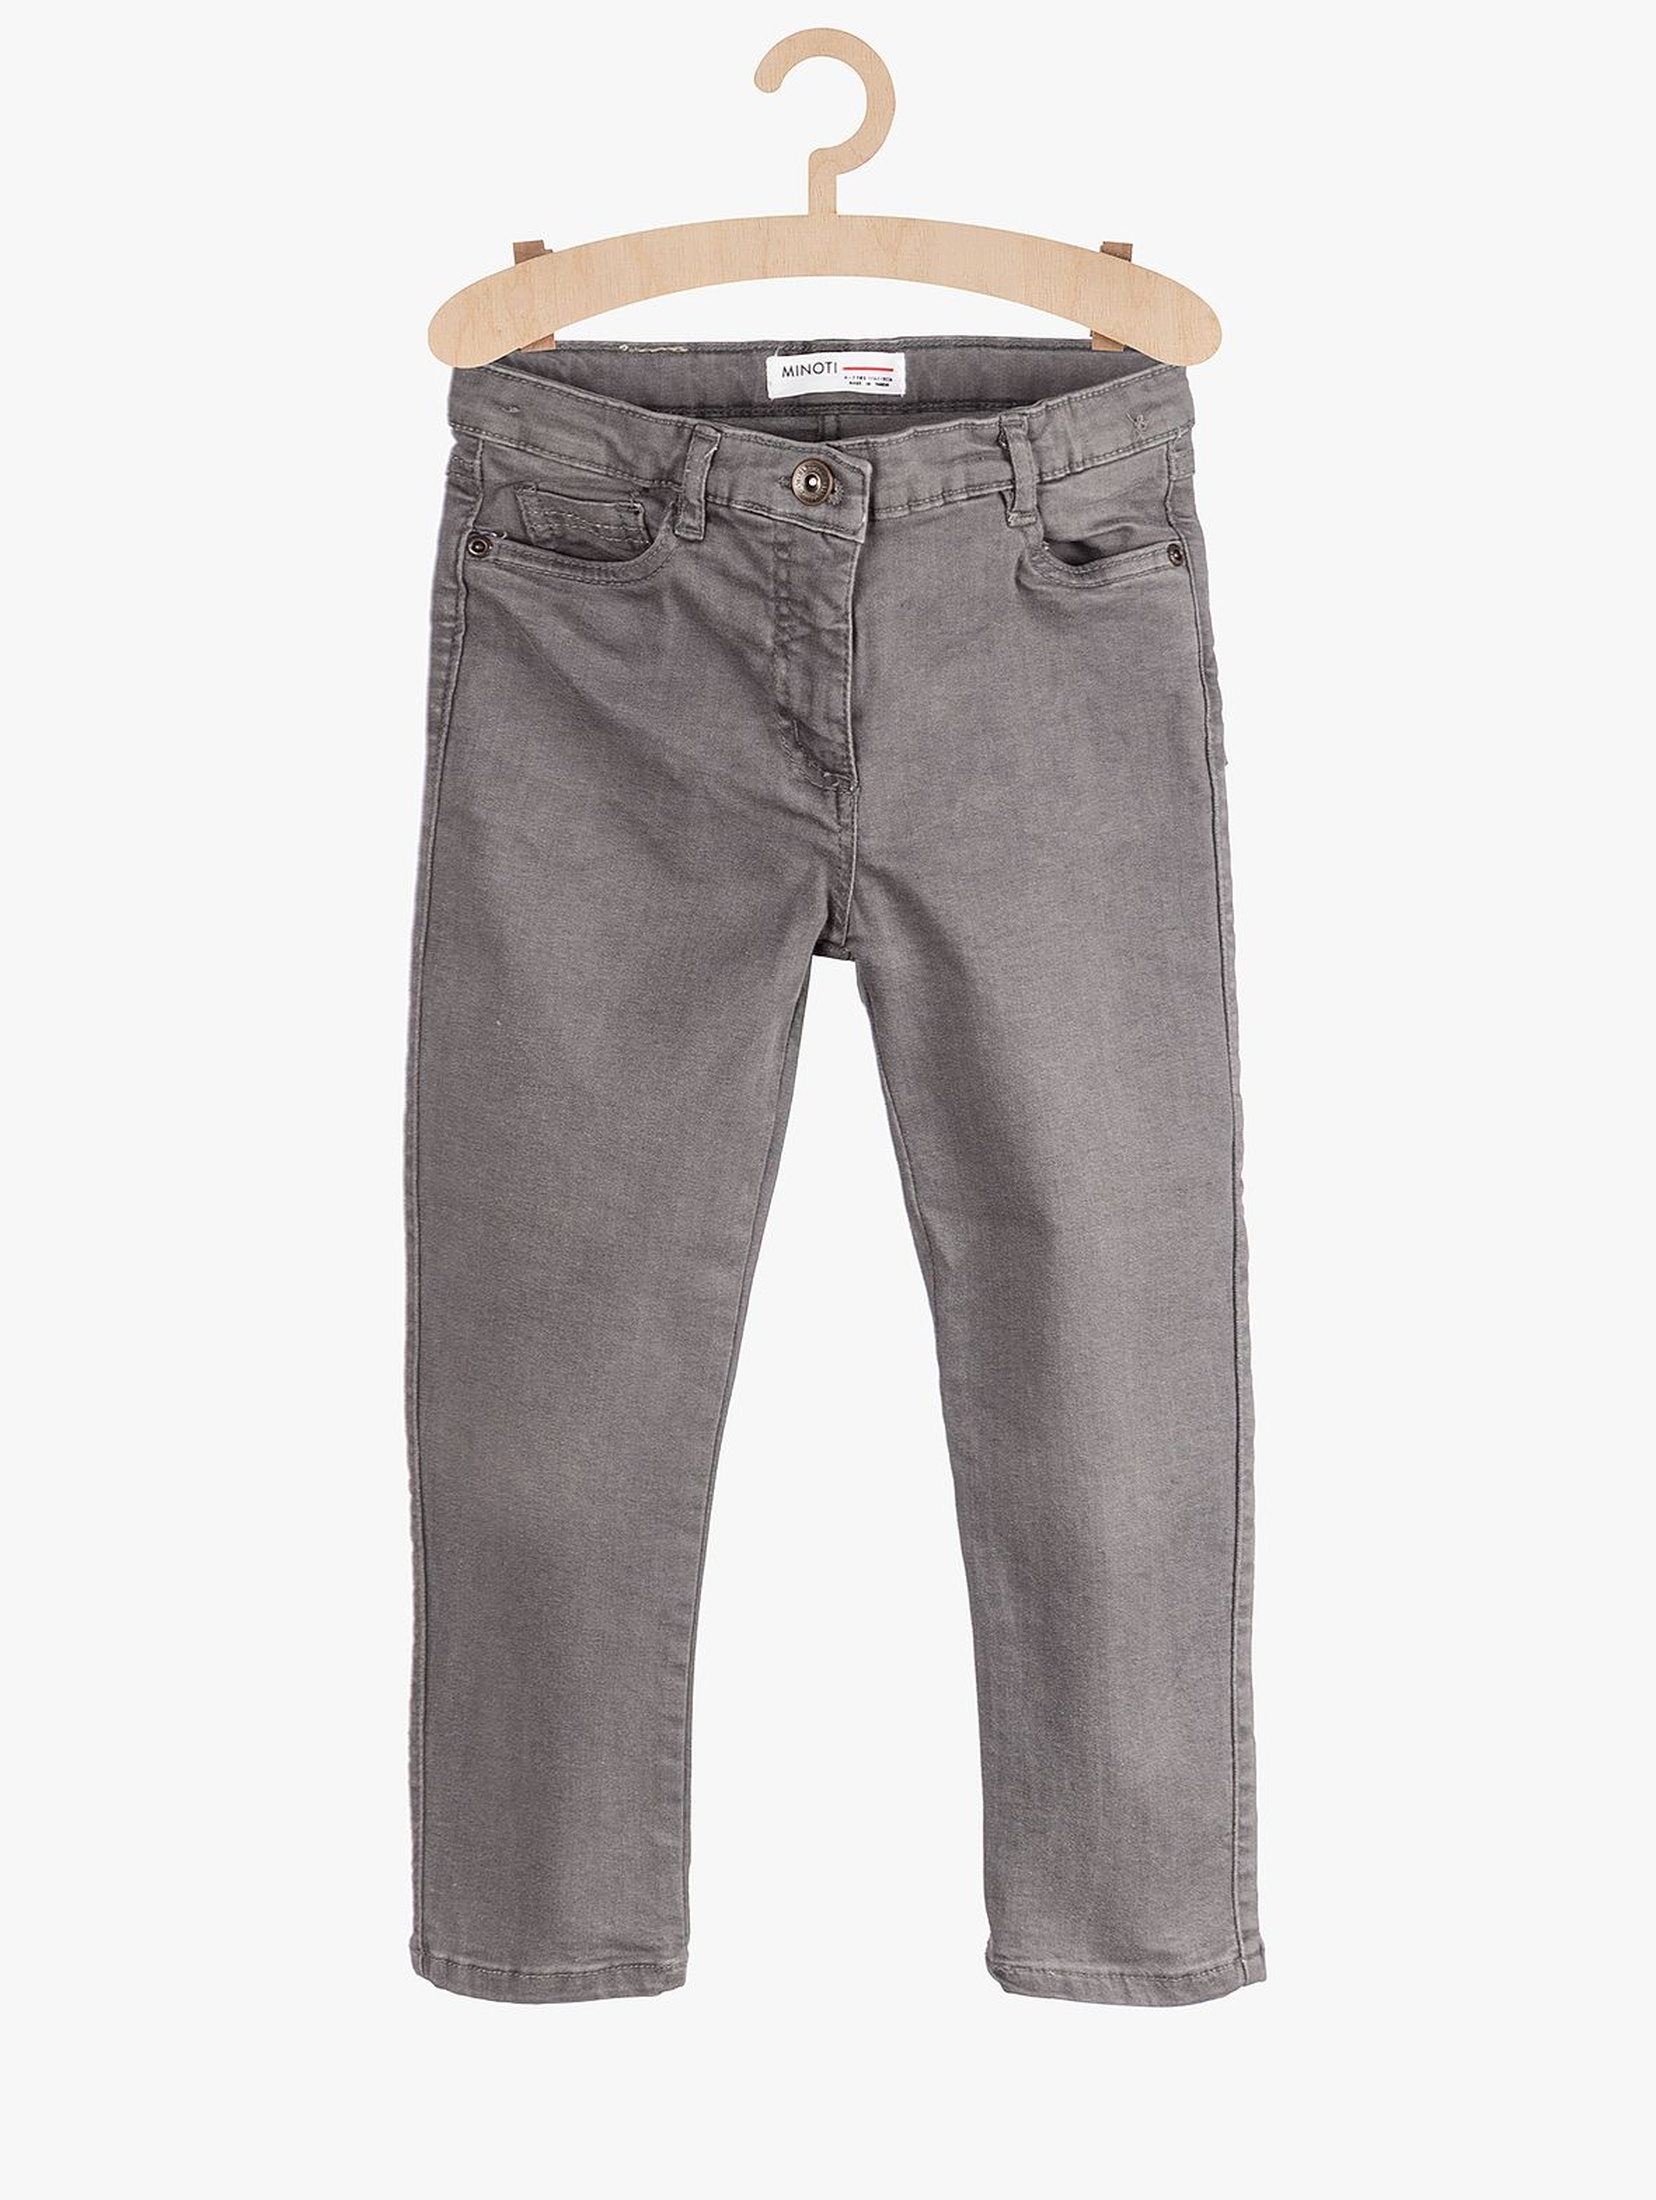 Jeansowe spodnie dla dziewczynki- szare z kieszeniami